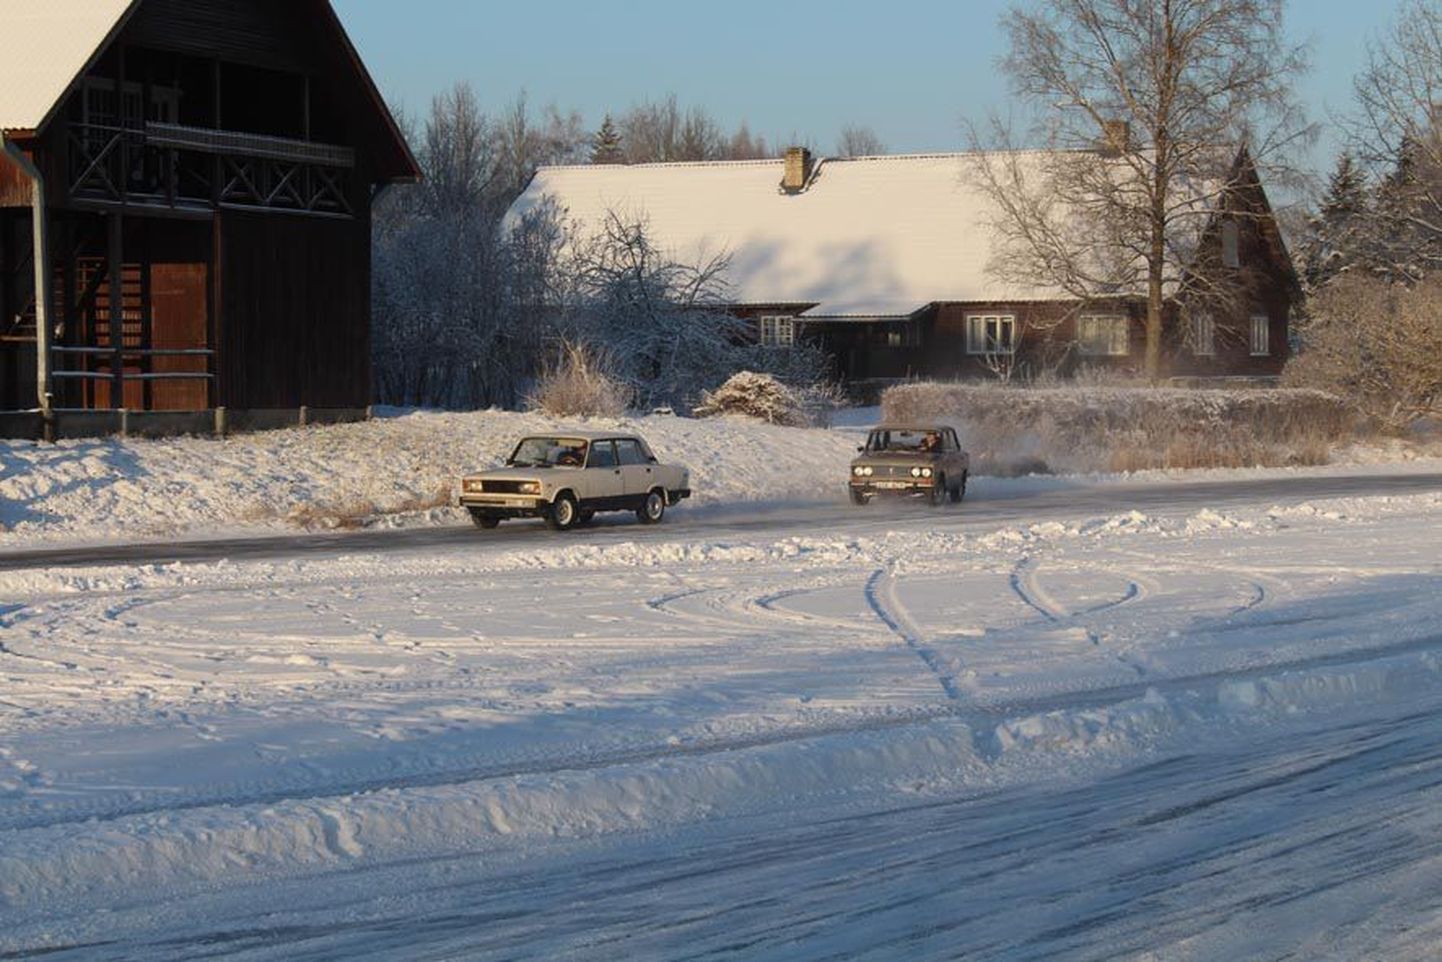 Pühapäeva hommikul võis Väätsa paisjärvele tehtud jäärajal sõitmas näha vanemat nõukogude ja Lääne päritolu tehnikat. Nagu kinnitas jäärajameister Igor Roosmaa, on inimeste nälg talviste sõiduvõimaluste järele suur.